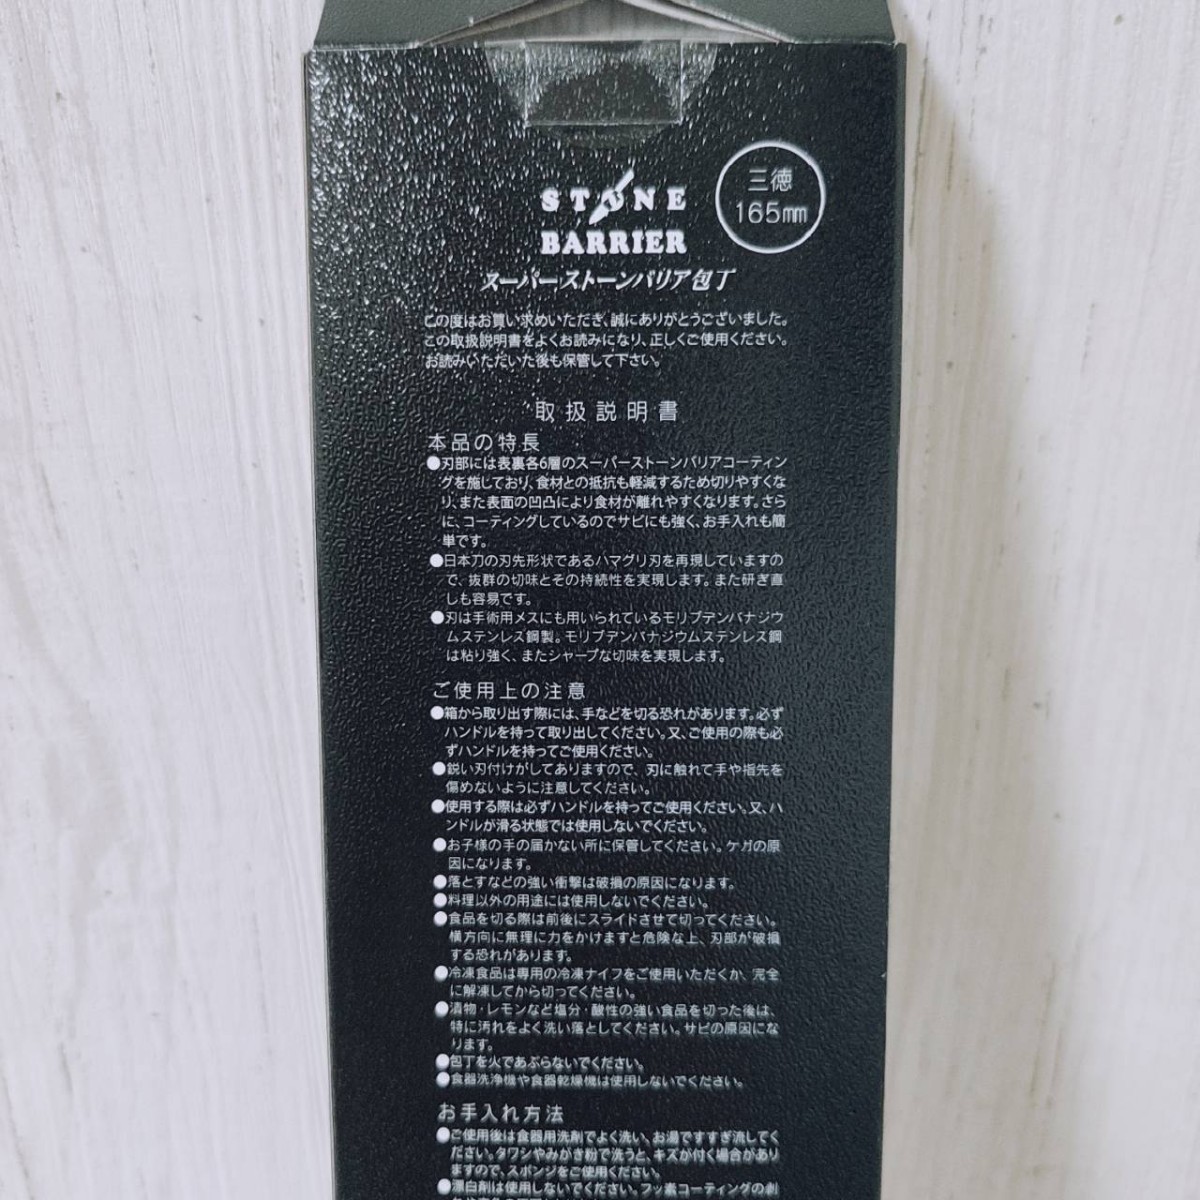 【新品】スーパーストーンバリア包丁 三徳 165mm 日本製